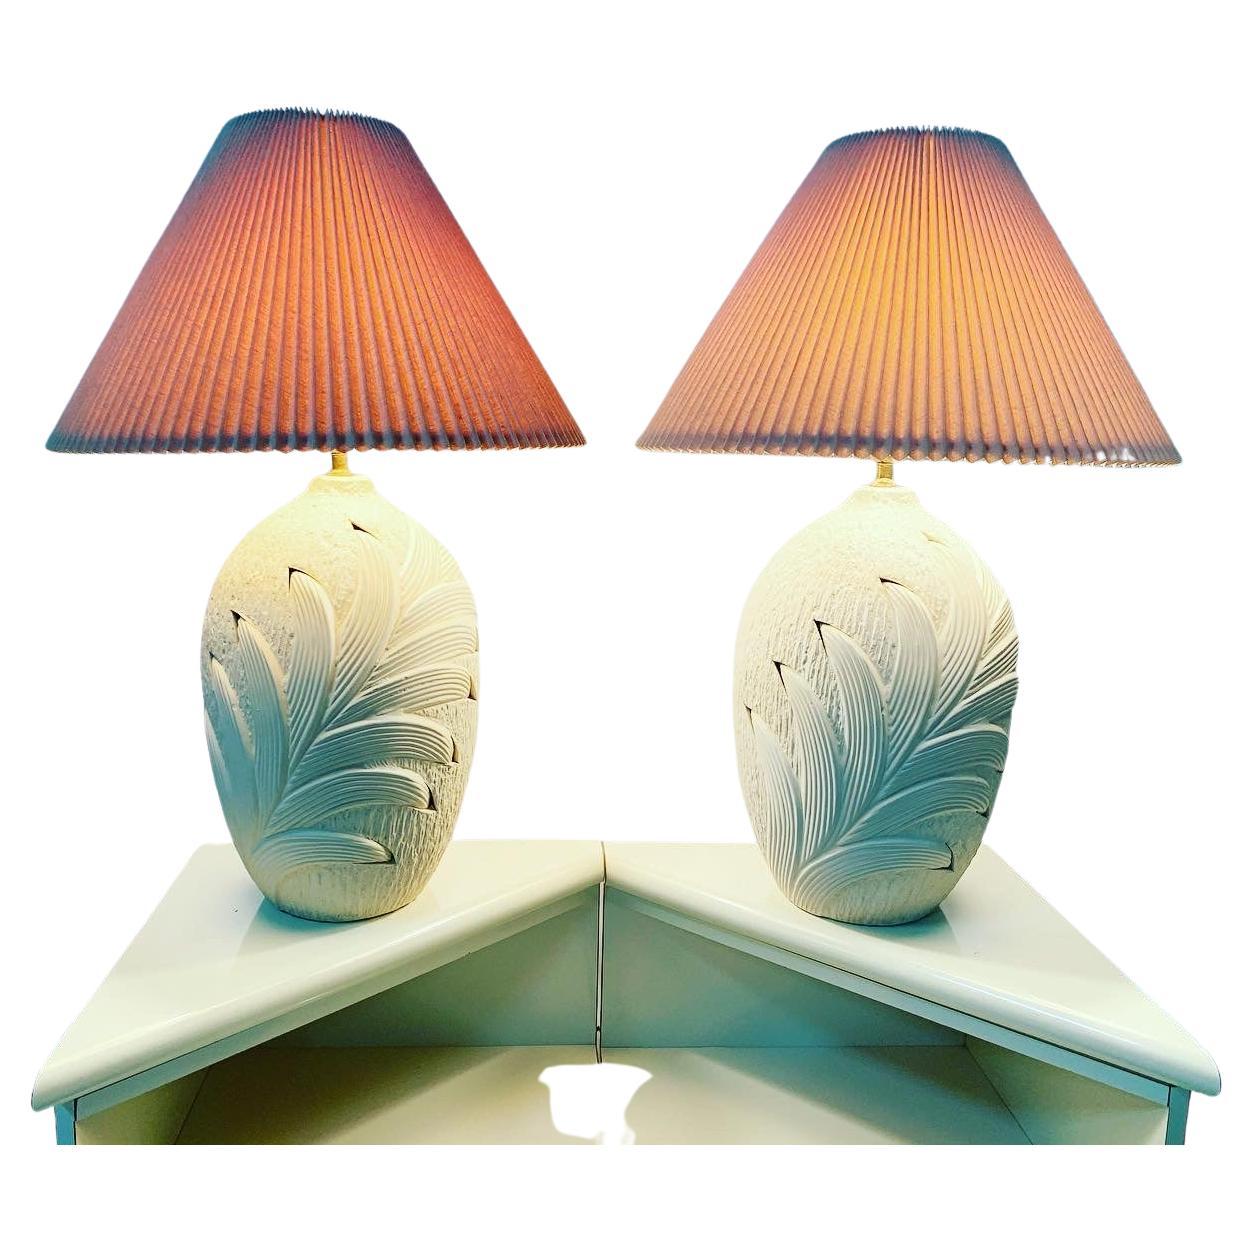 Tischlampen im Küstenstil aus Gips mit Palmenwedelblattmuster – Paar